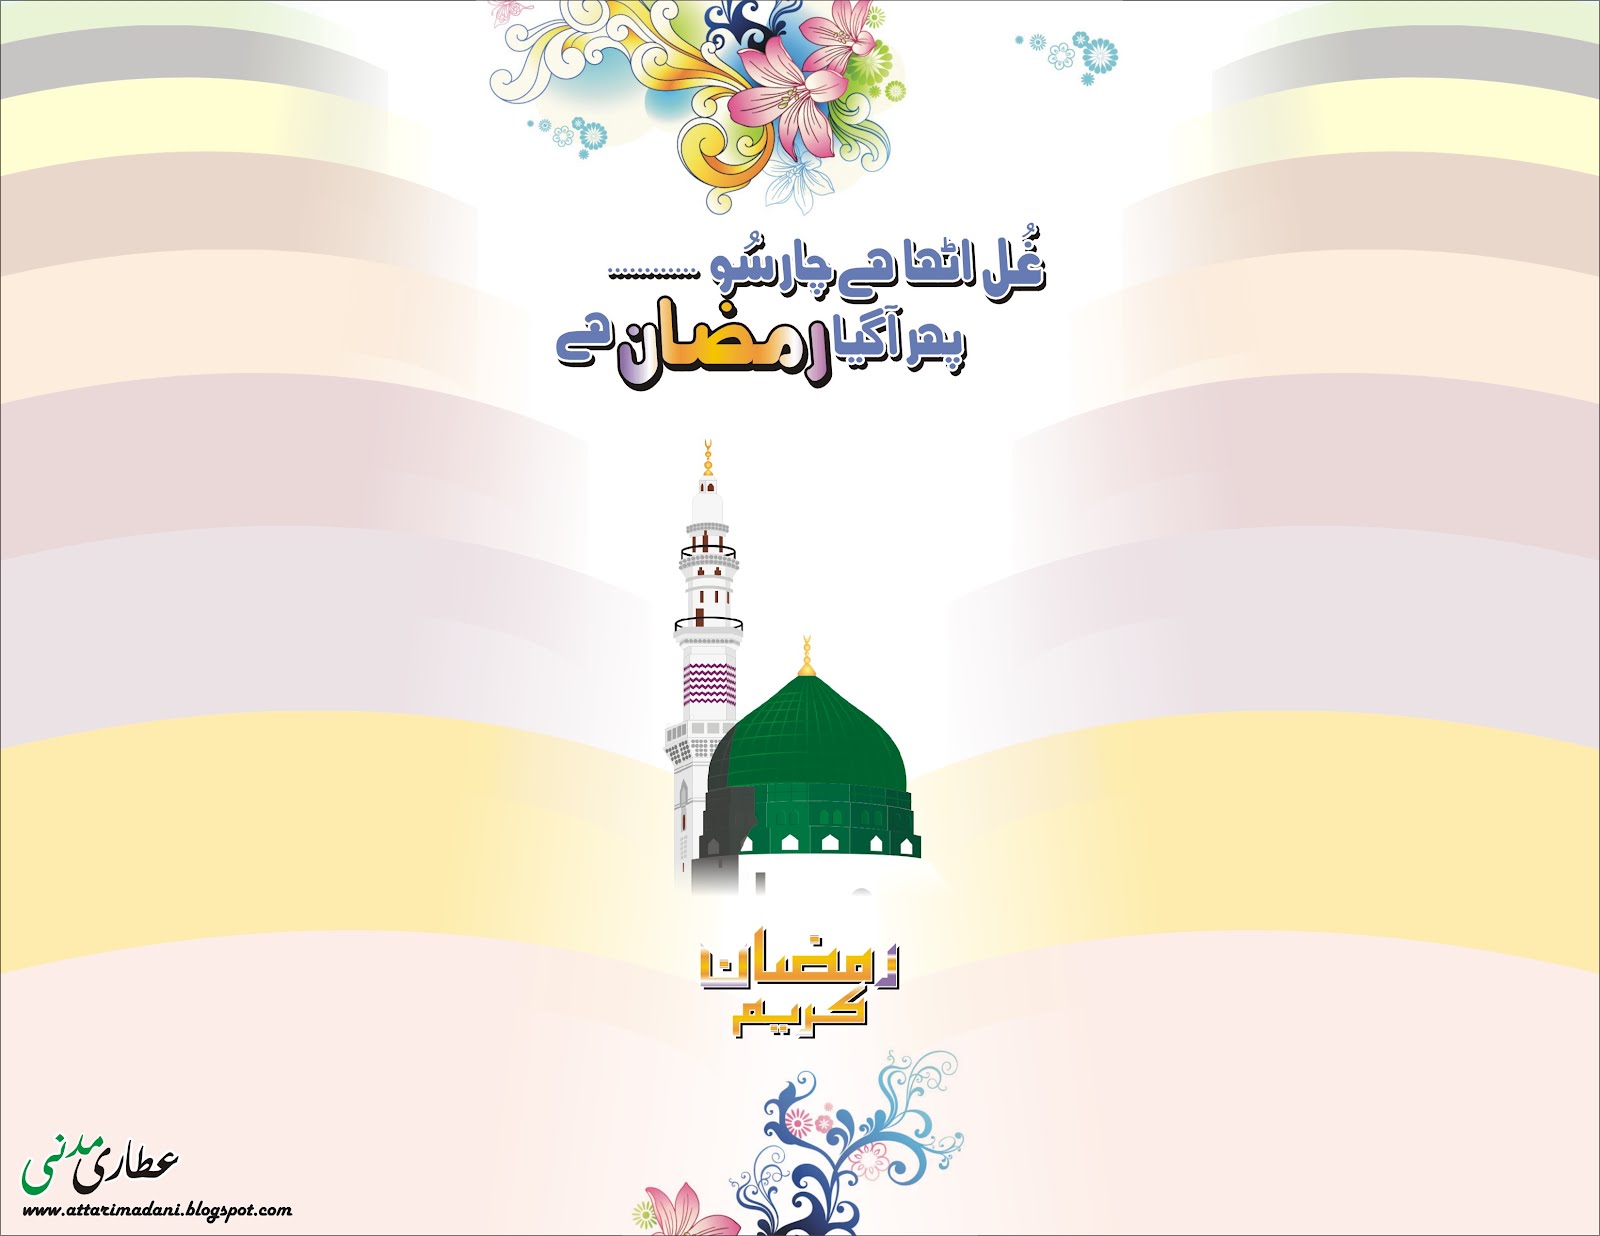 Wallpaper Ramadan - Dawateislami Ramadan , HD Wallpaper & Backgrounds